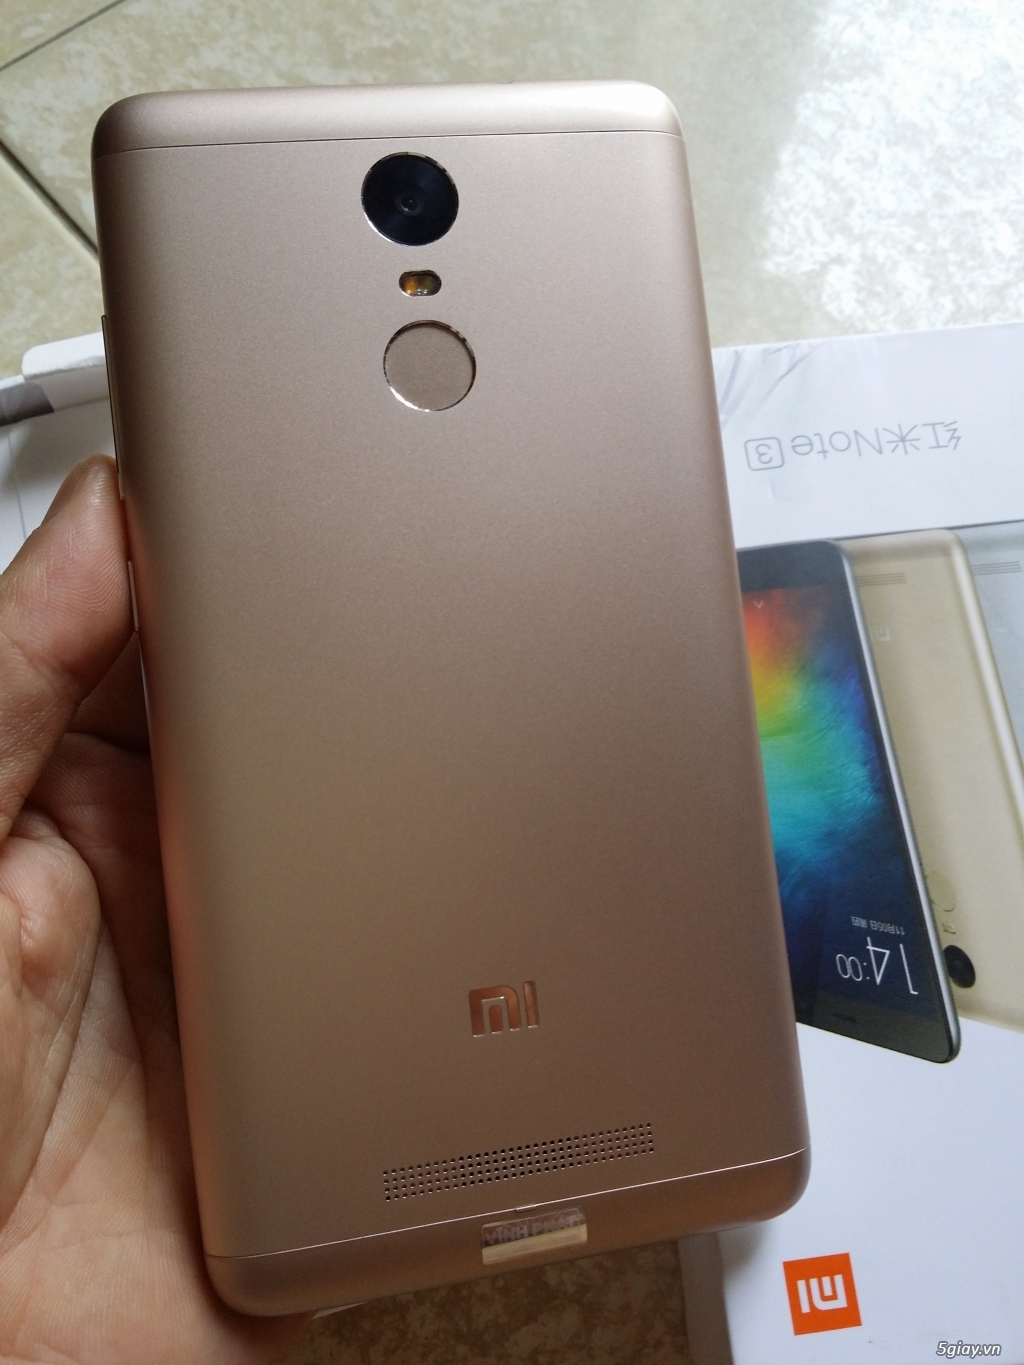 Xiaomi Redmi Note 3 Gold Ram 3G/32G like new 99,9% bh 12 tháng - 6